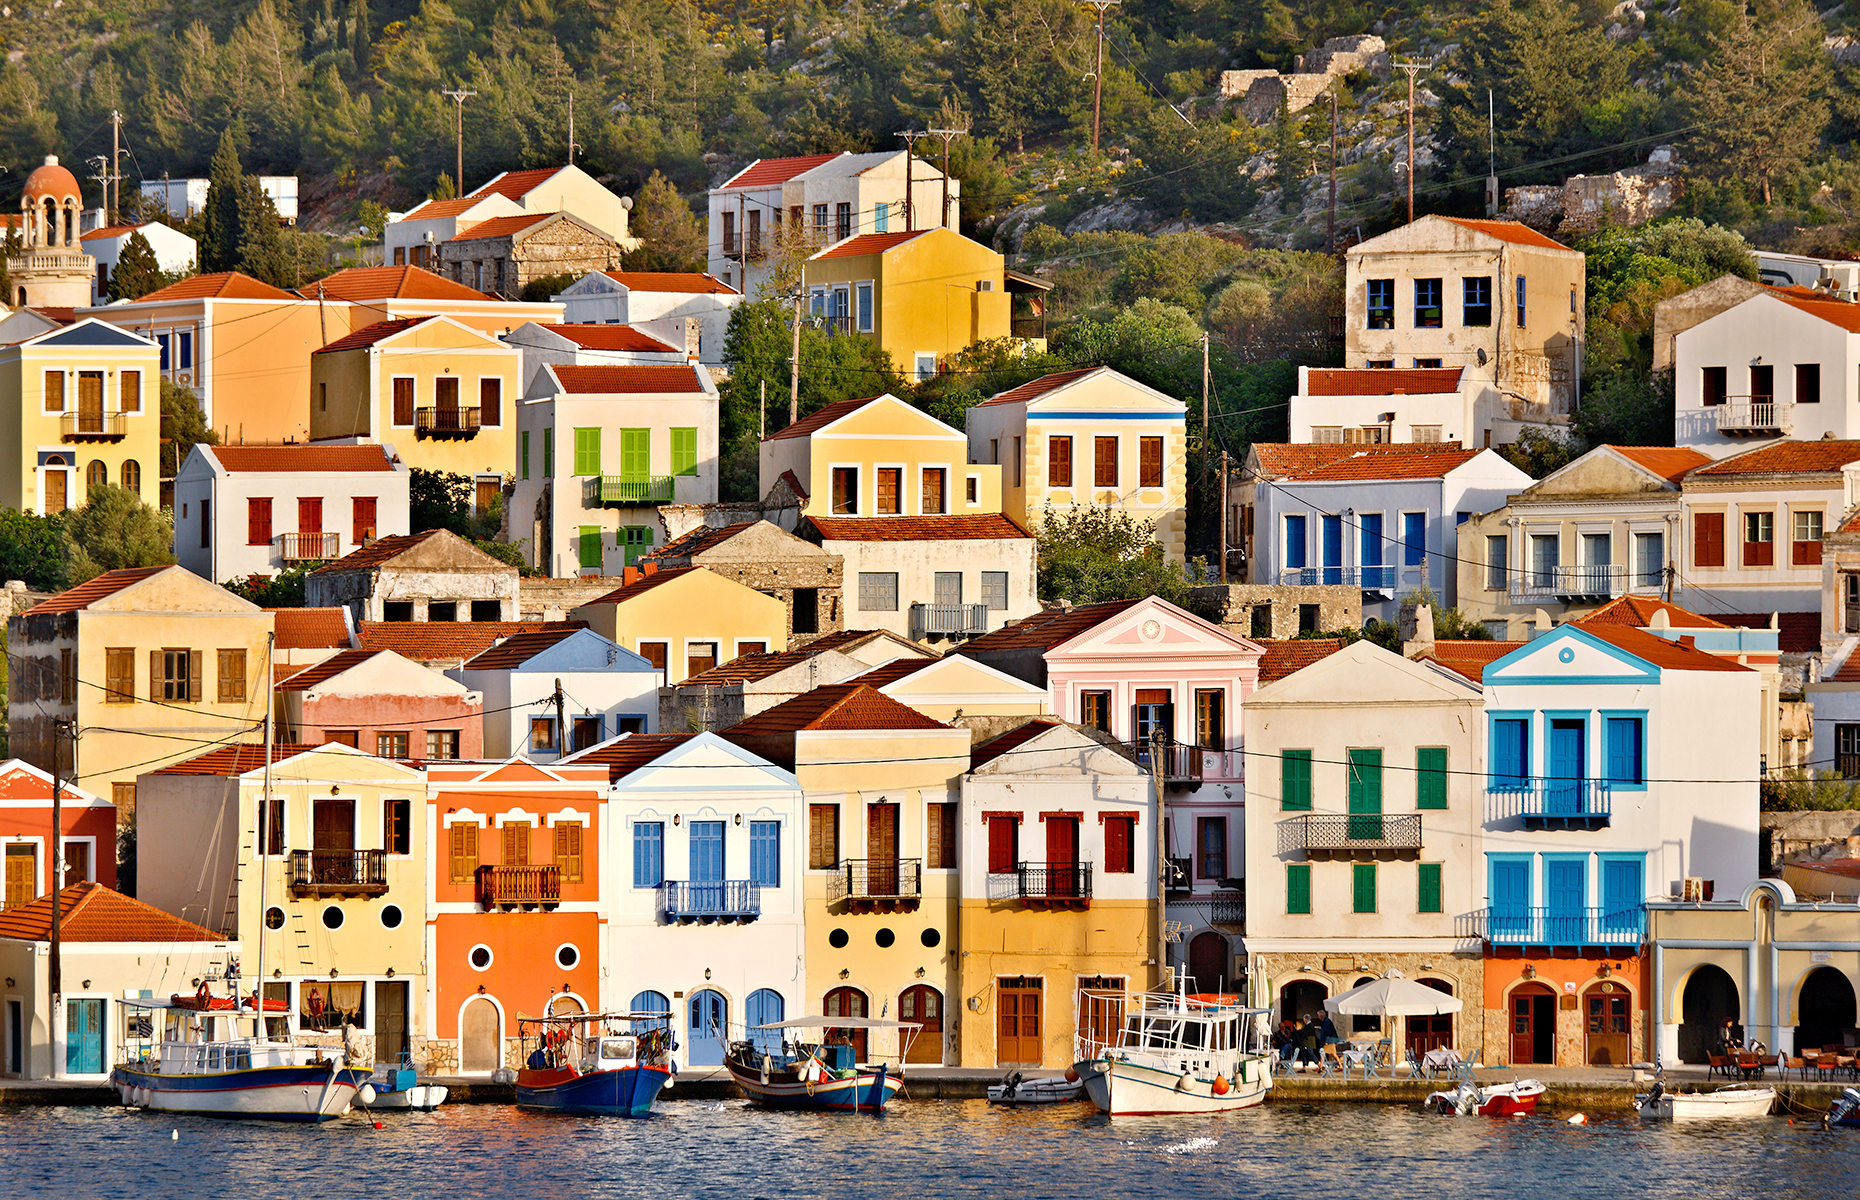 Kastellorizo, Greece (Image: Heracles Kritikos/Shutterstock)